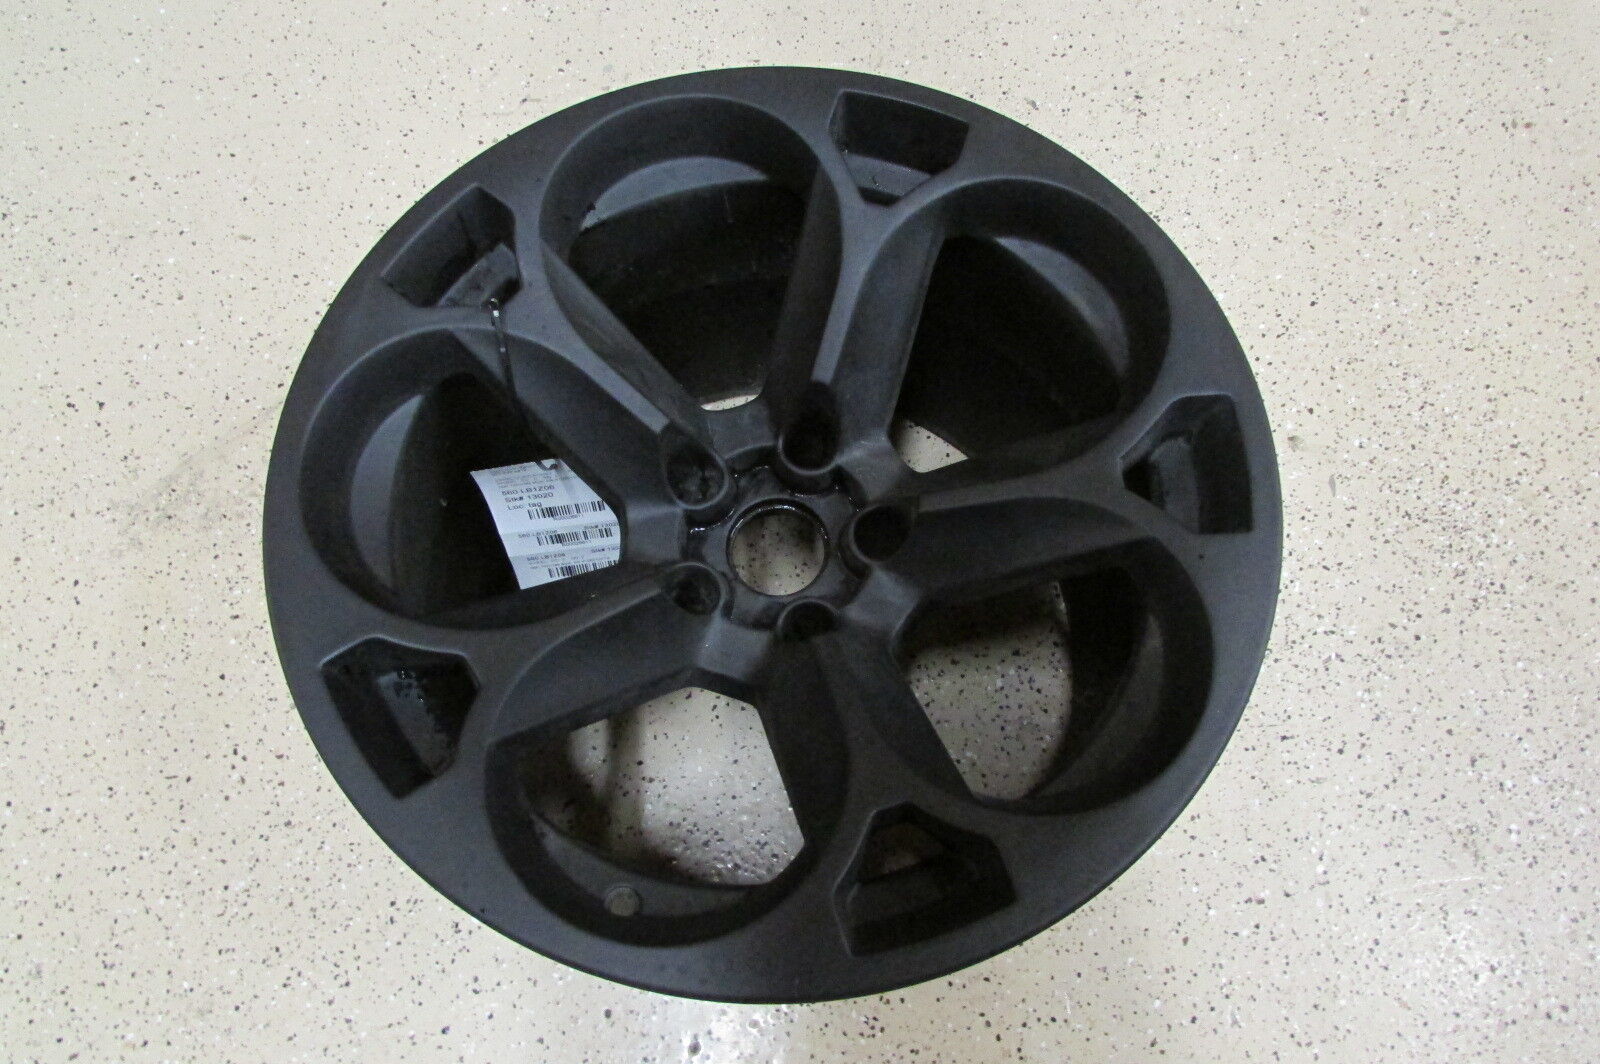 Lamborghini Murcielago, Rear Wheel, Hercules Style, Black, Used, P/N 410601017A